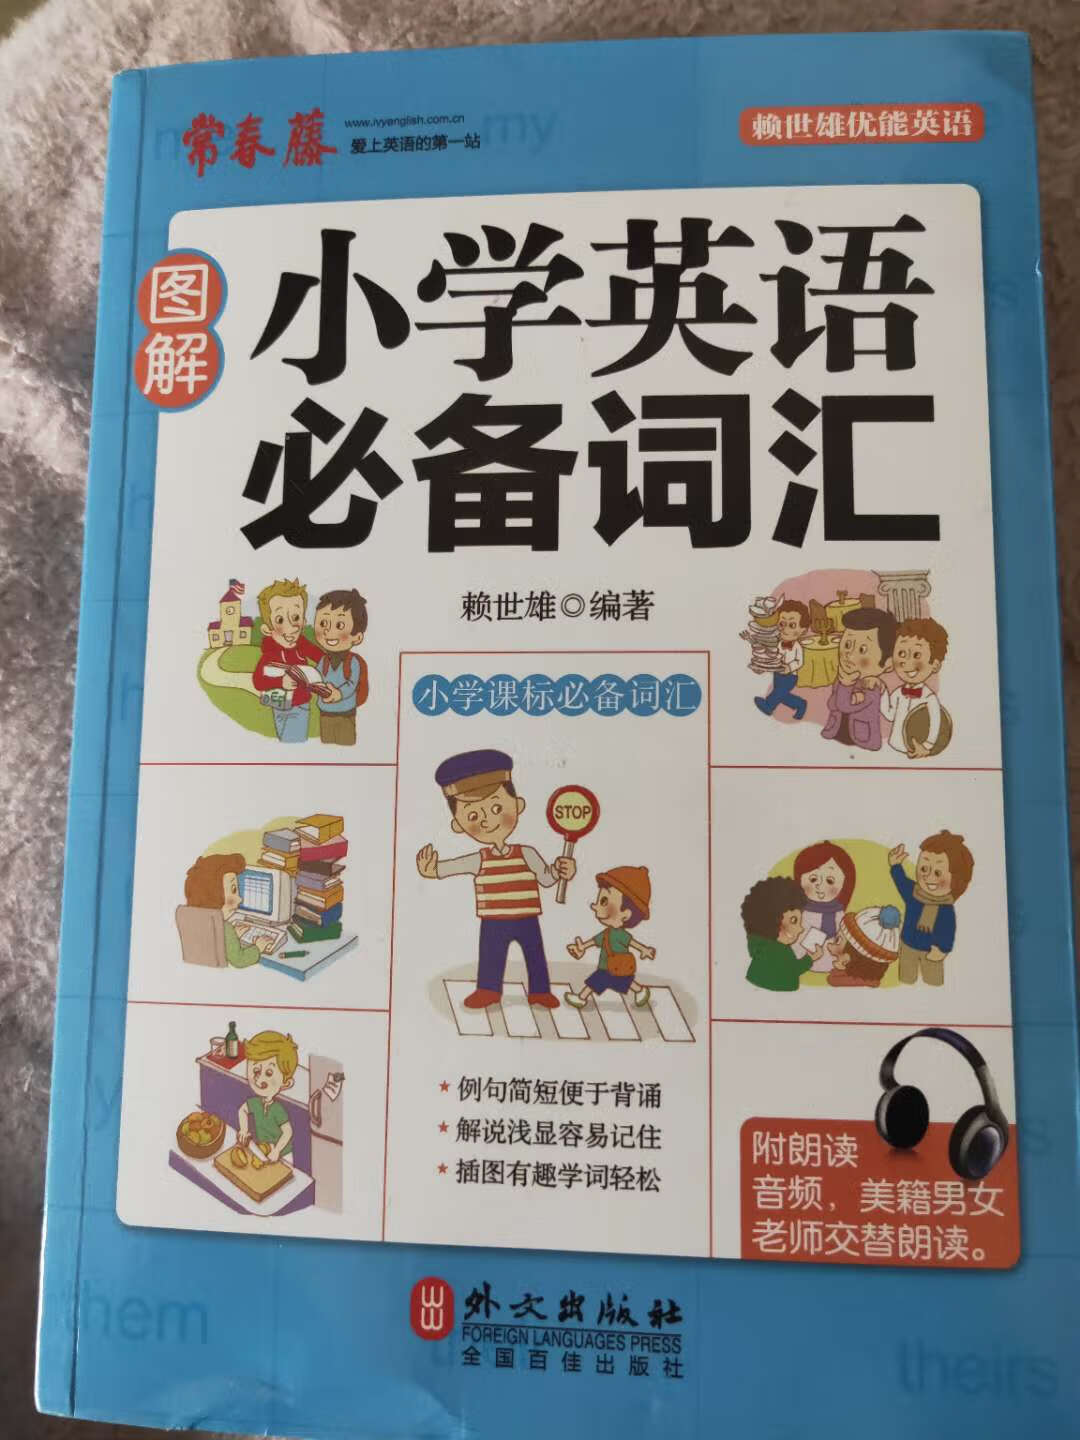 给孩子准备的课外学习书。